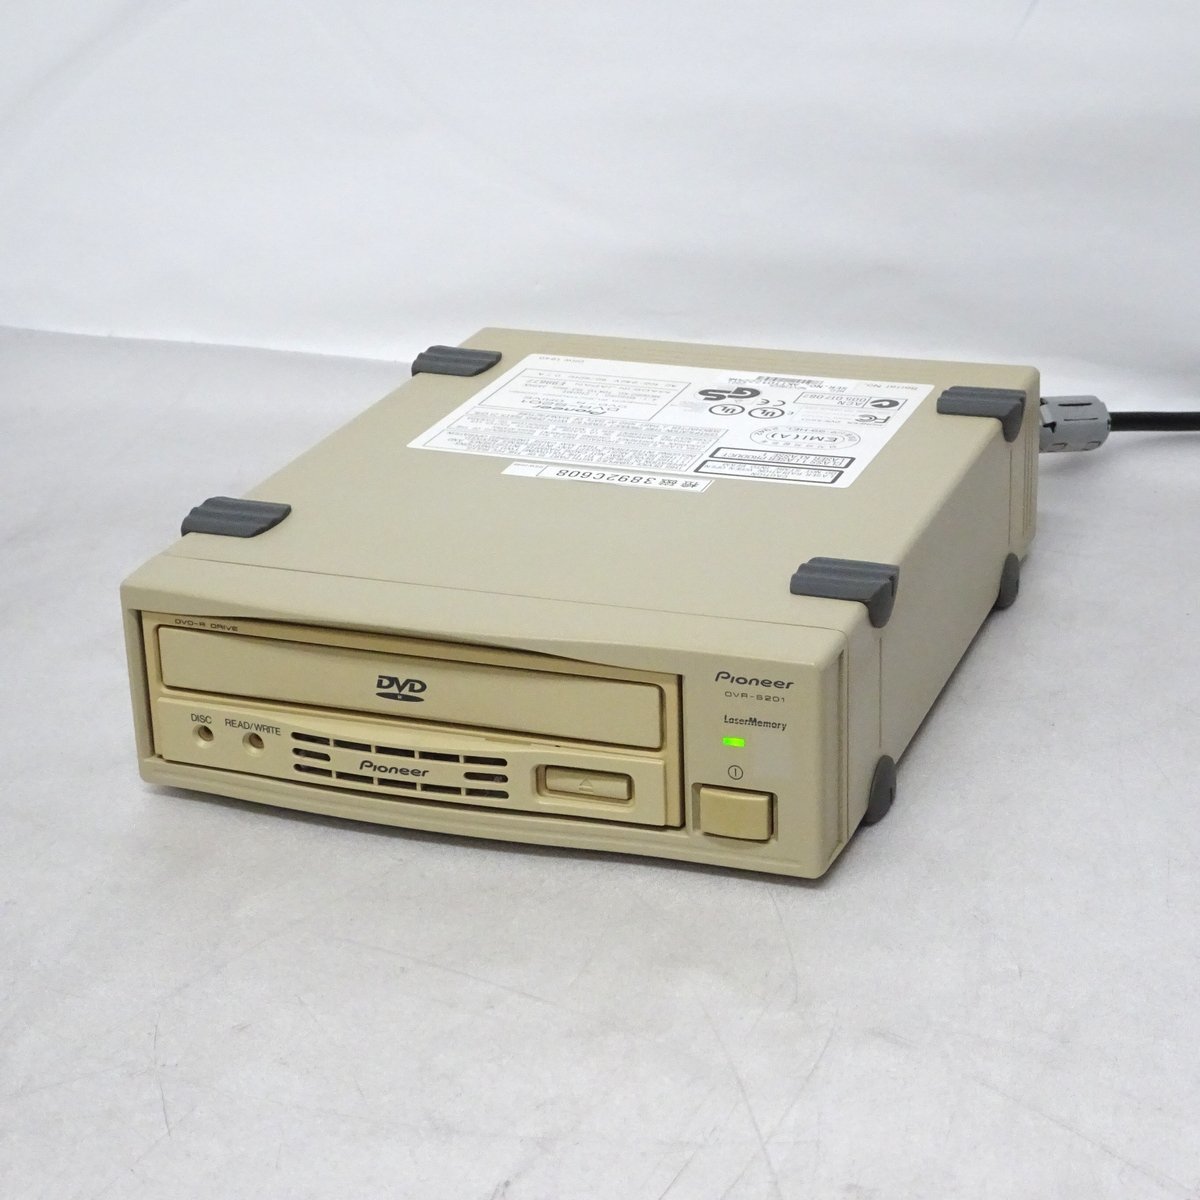 Pioneer DVR-S201 業務用オーサリング用DVD-Rドライブ【中古/通電のみジャンク】#380418_画像1